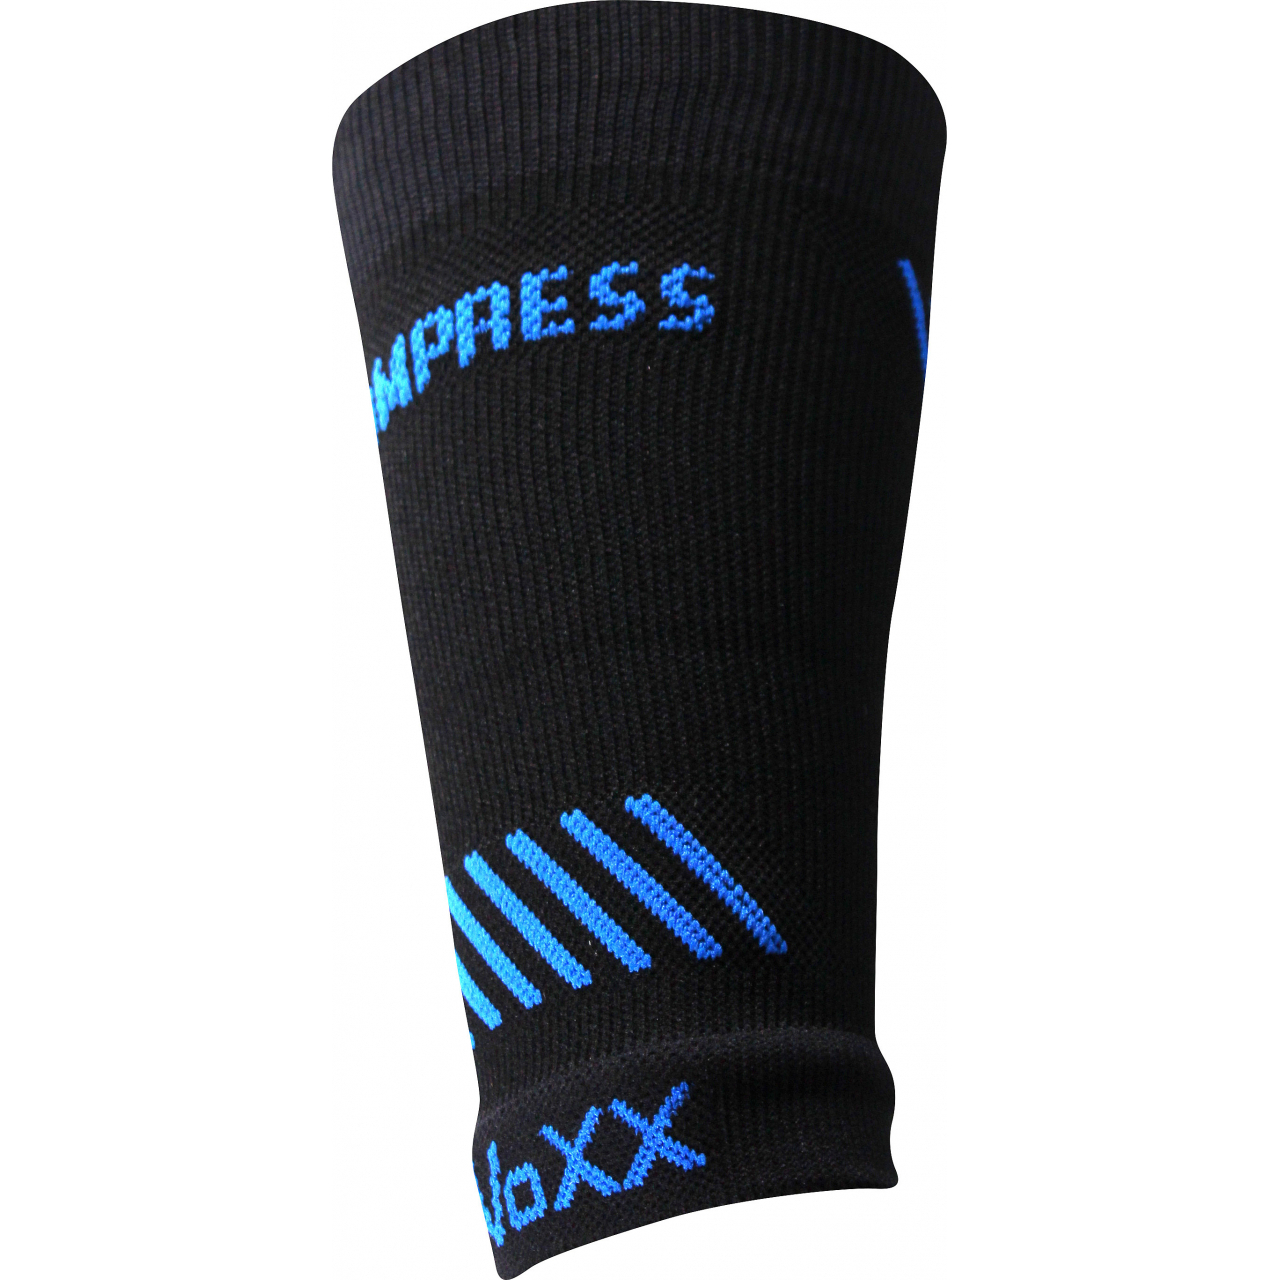 Návlek kompresní Voxx Protect zápěstí - černý-modrý, S/M